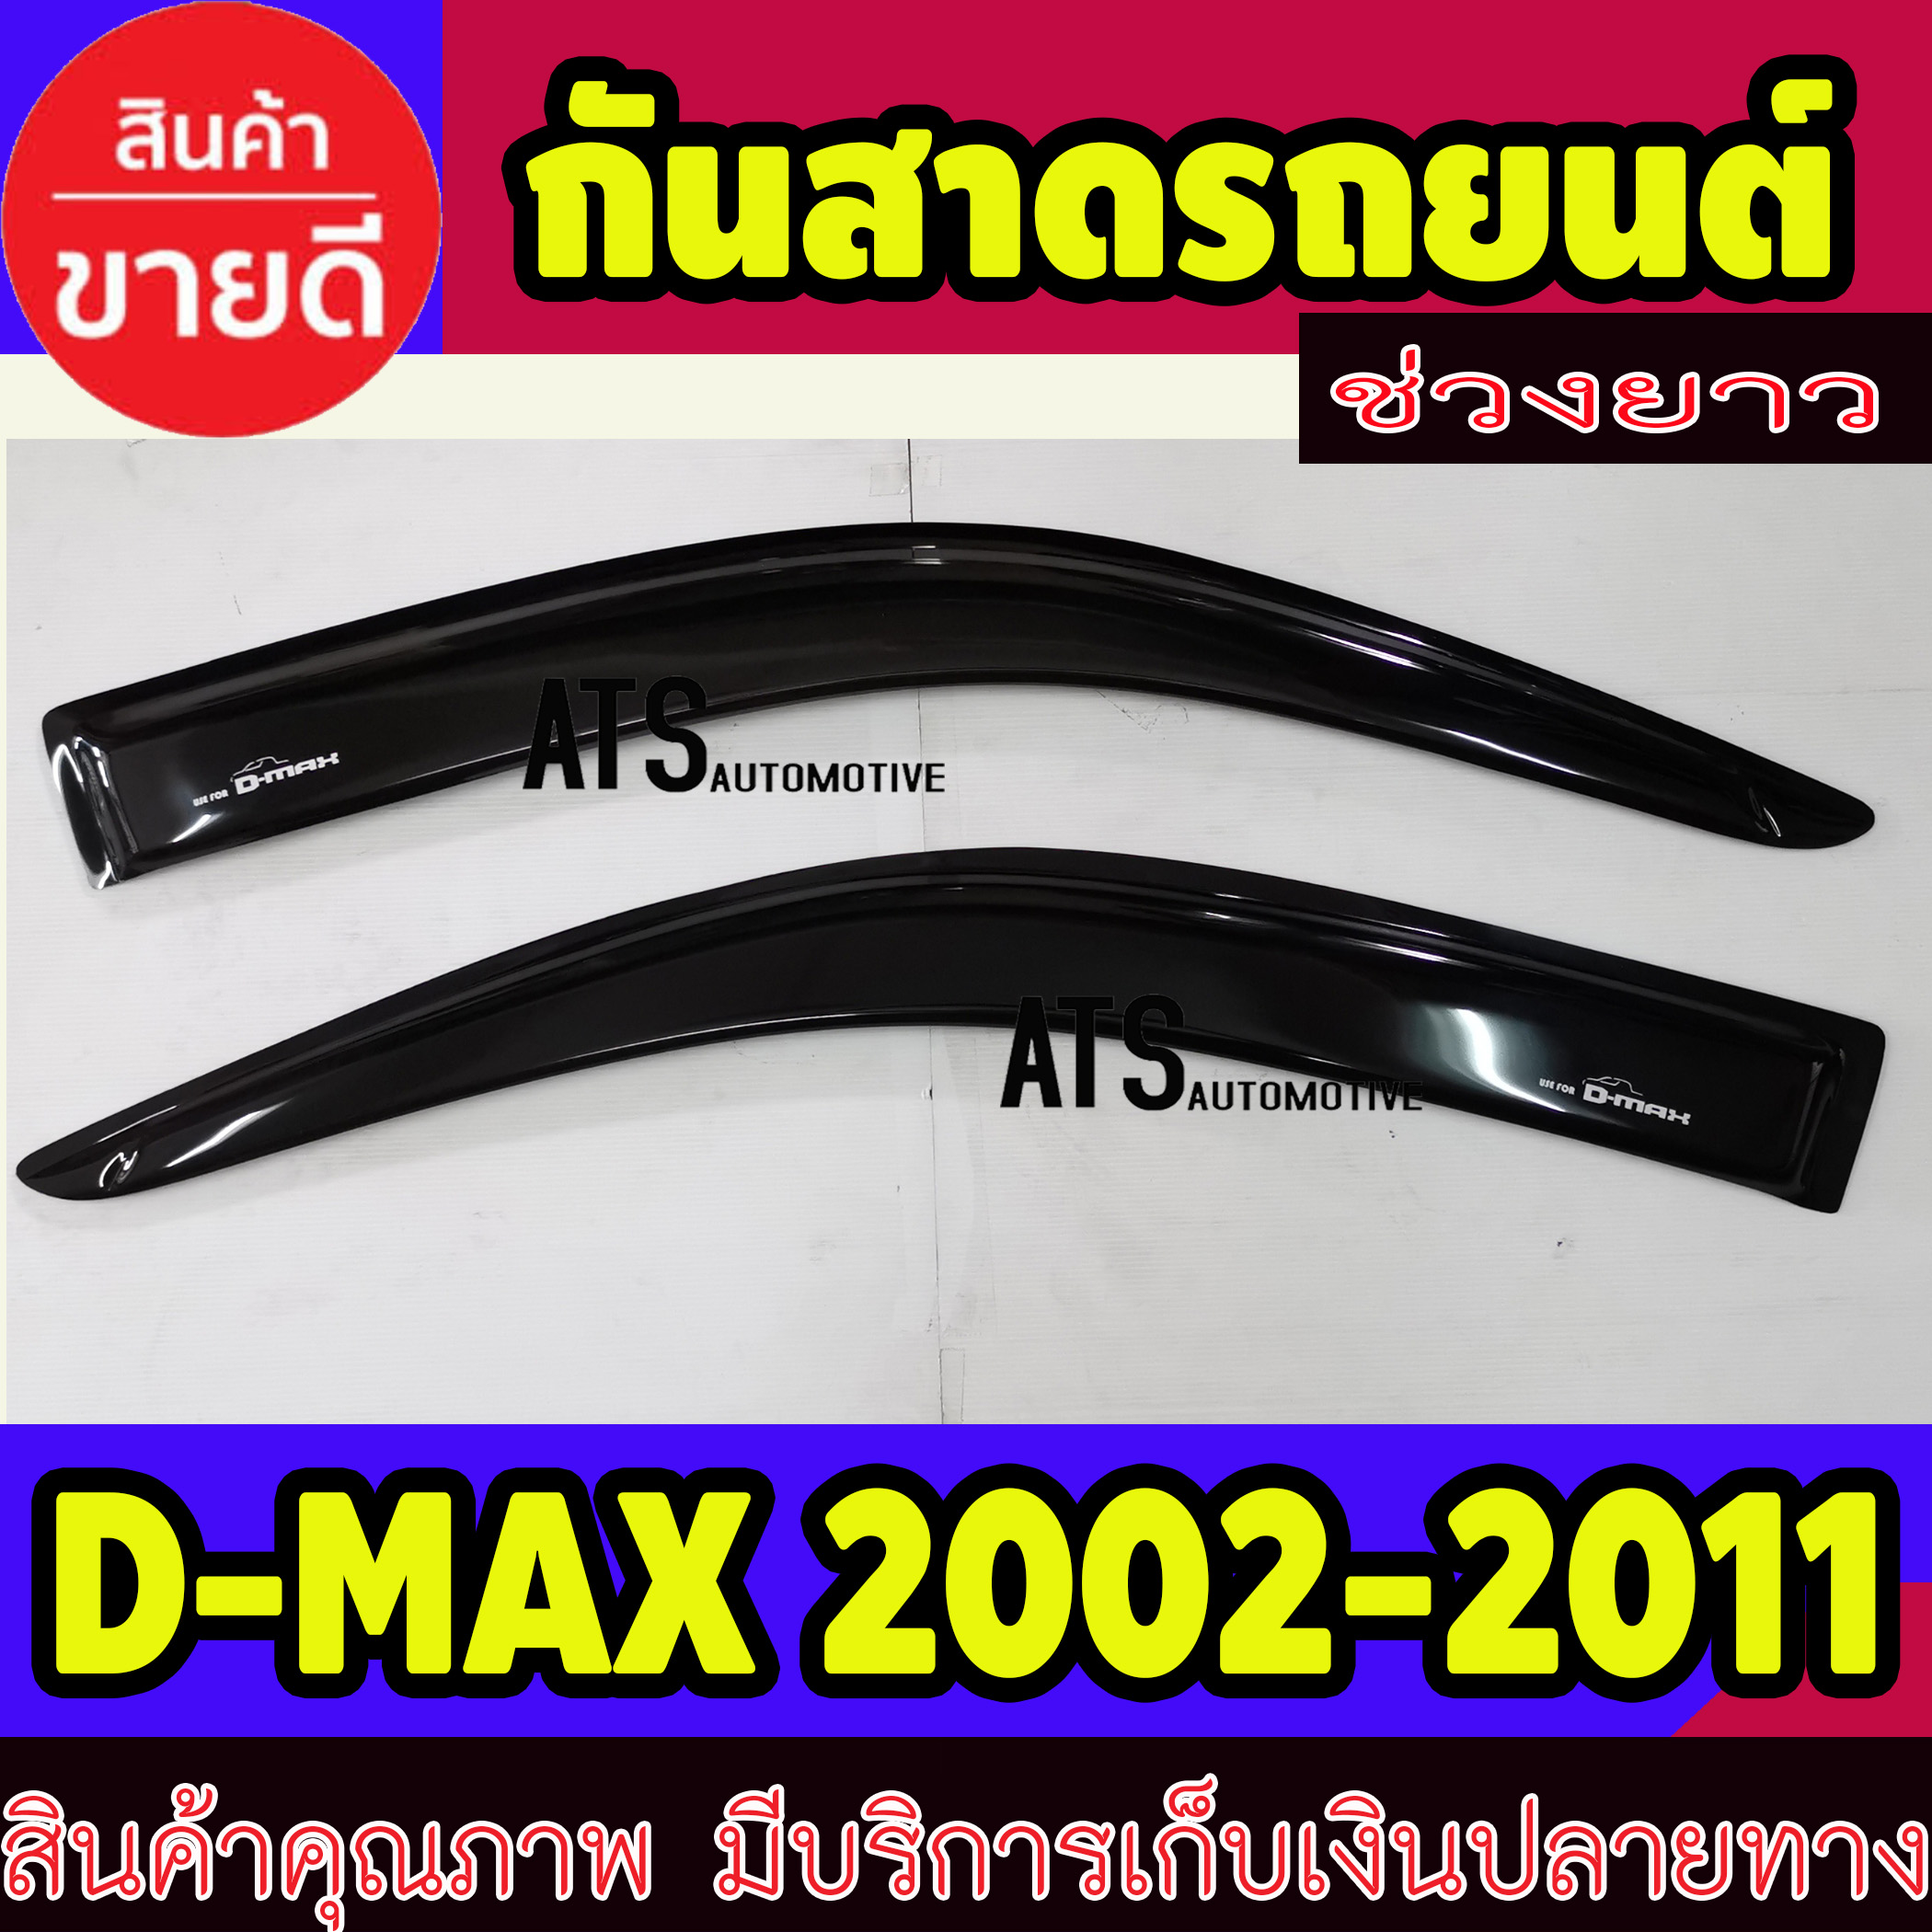 คิ้วกันสาดประตู คิ้วกันสาด รุ่นช่วงยาว 2 ชิ้น สีดำ อีซูซุ ดีแม็กซ์ Isuzu D-MAX DMAX 2002 2003 2004 2005 2006 2007 2008 2009 2010 2011